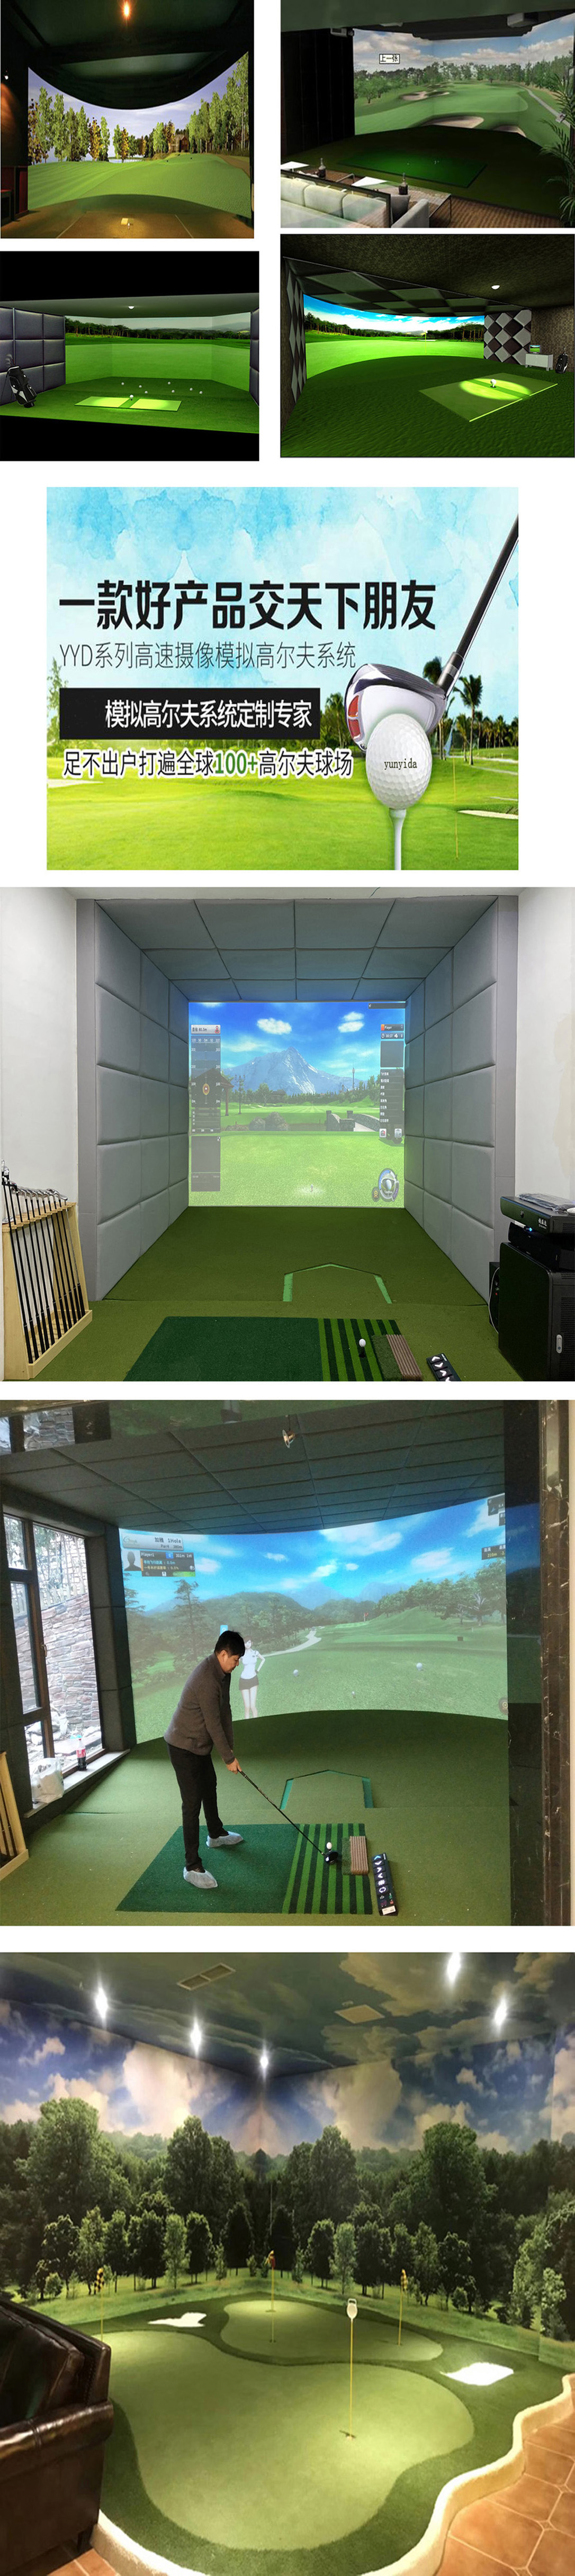 室内模拟高尔夫技术案例 4.jpg